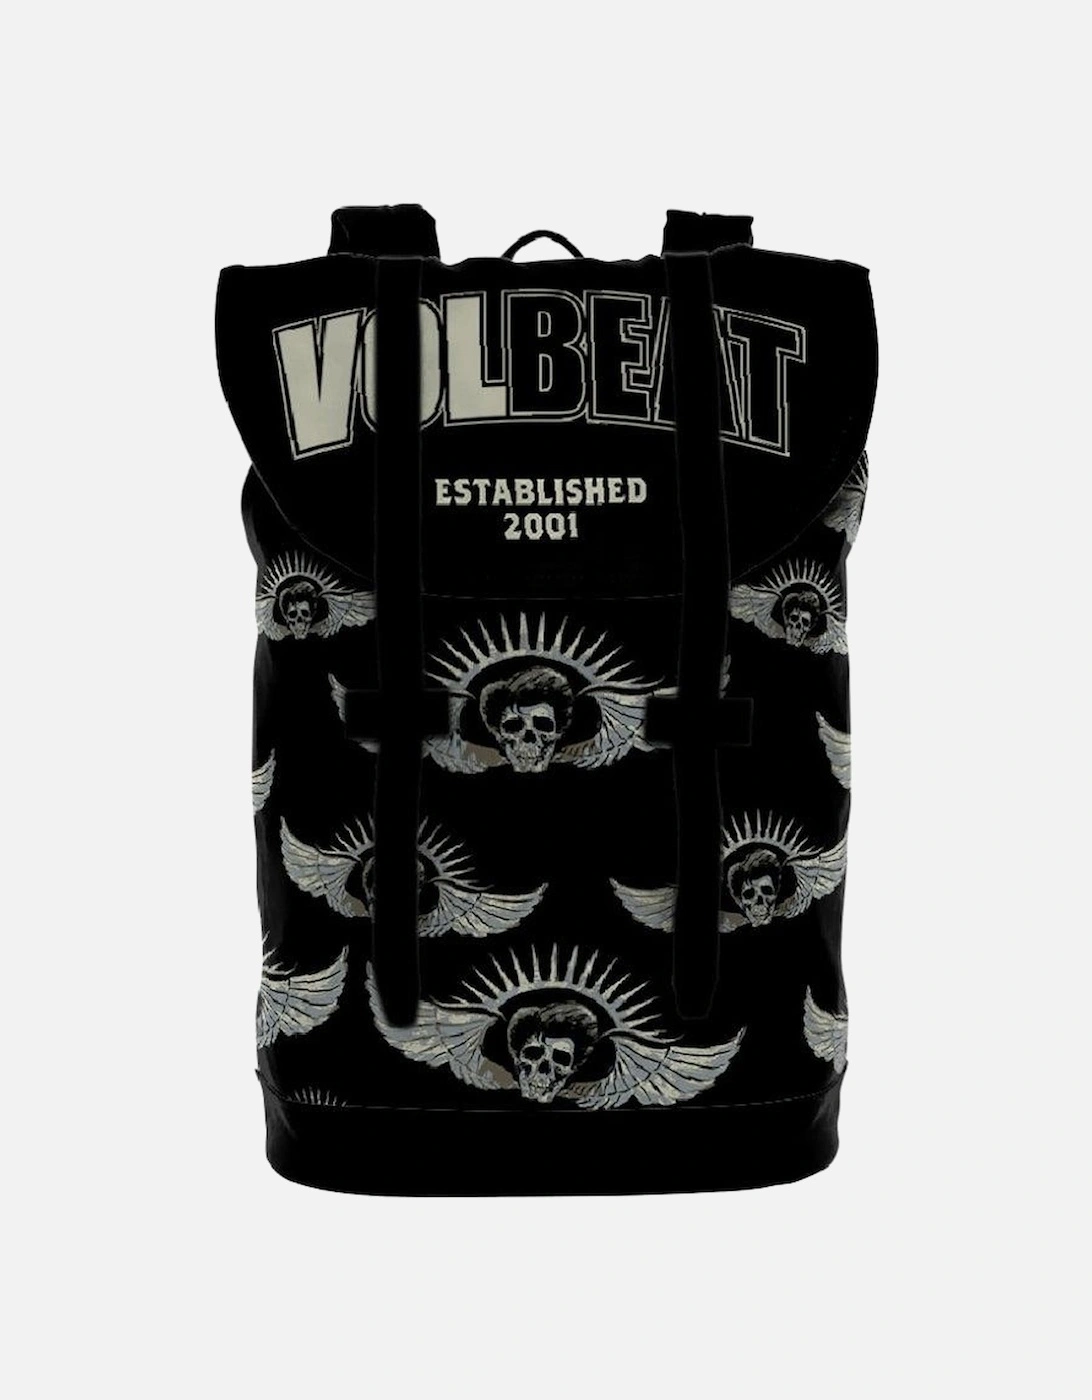 Established Volbeat Backpack, 2 of 1